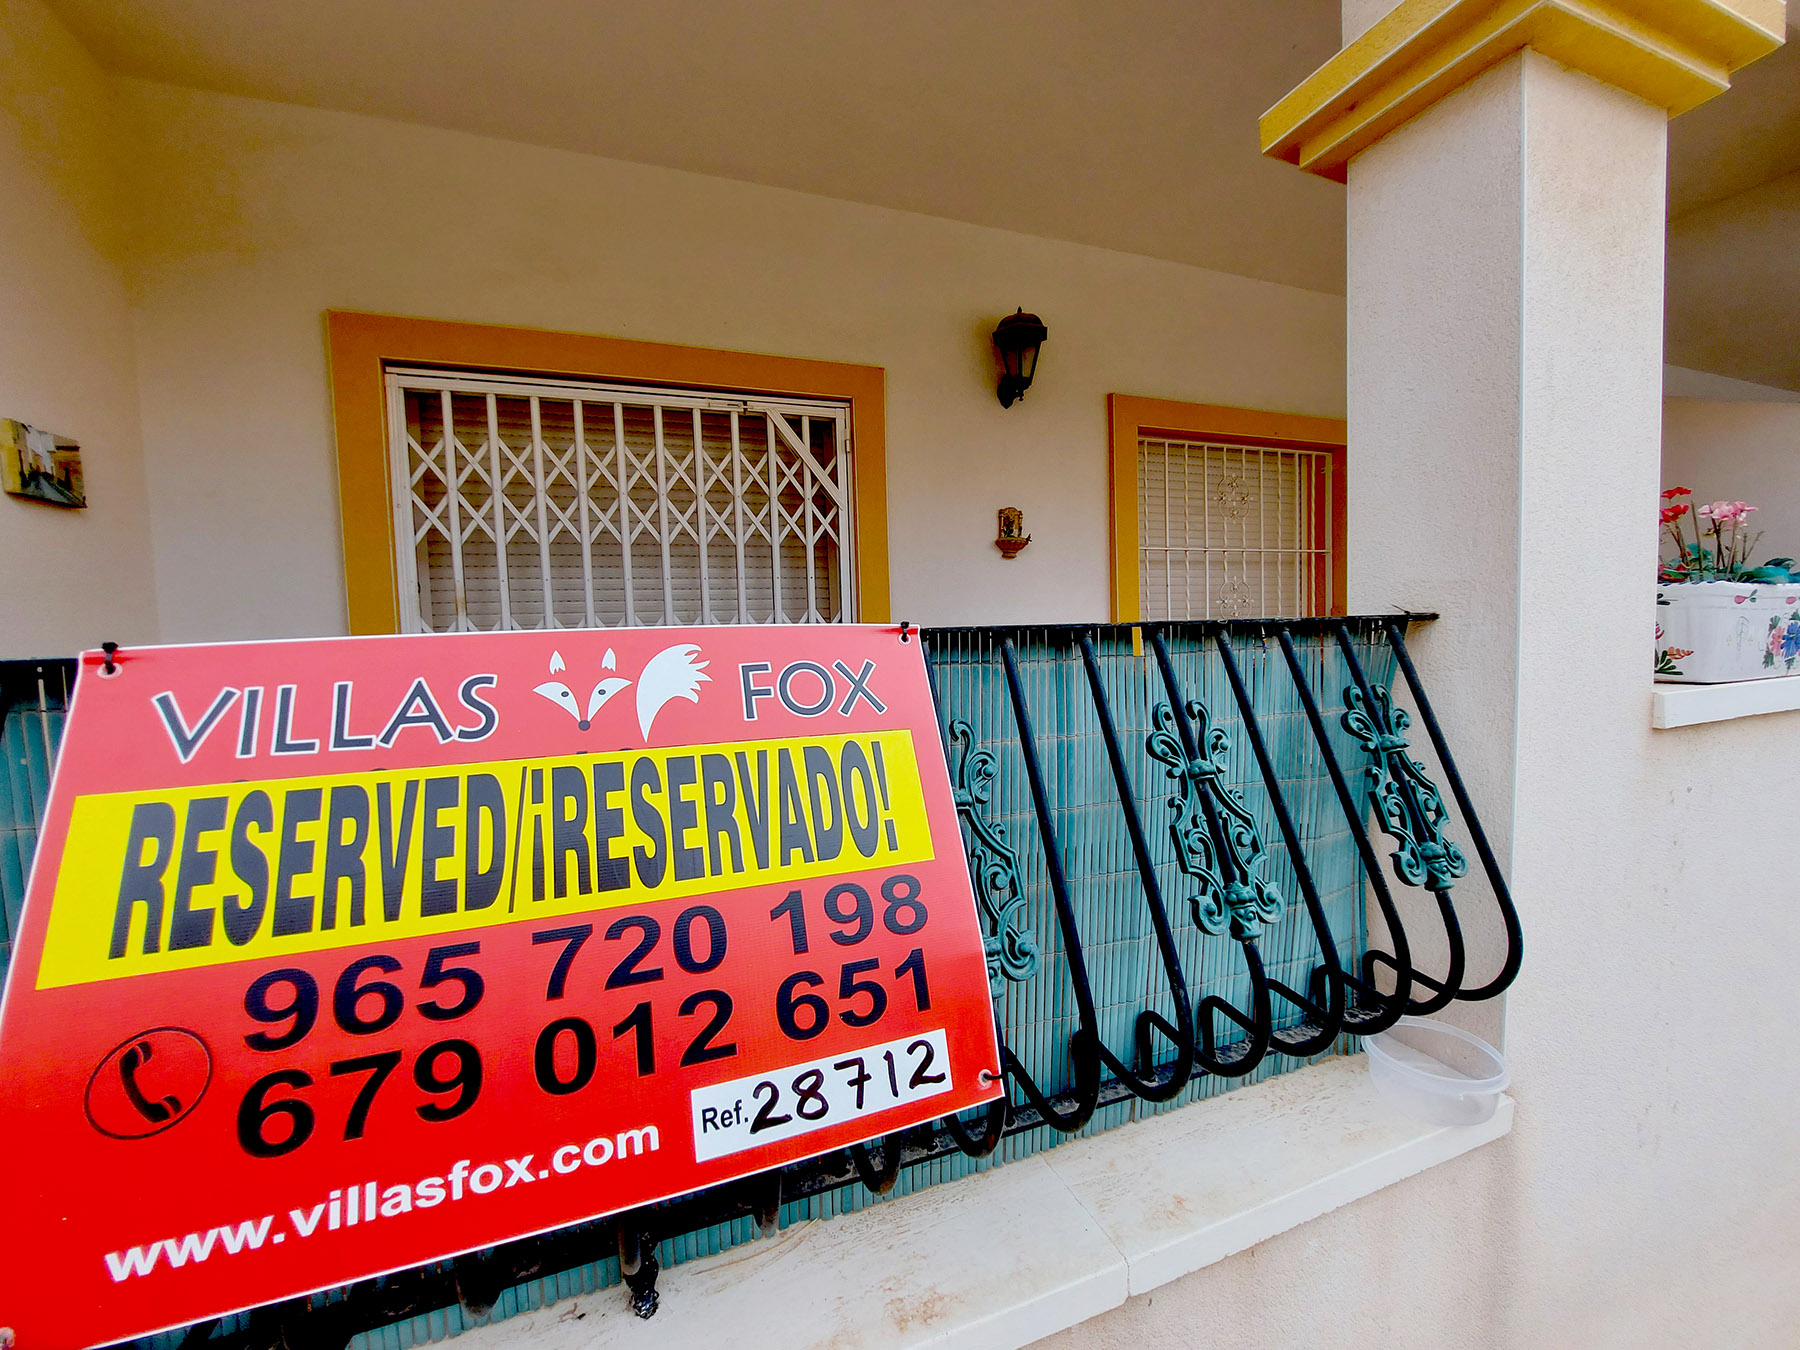 דירה נמכרת בסן מיגל דה סלינס villas fox